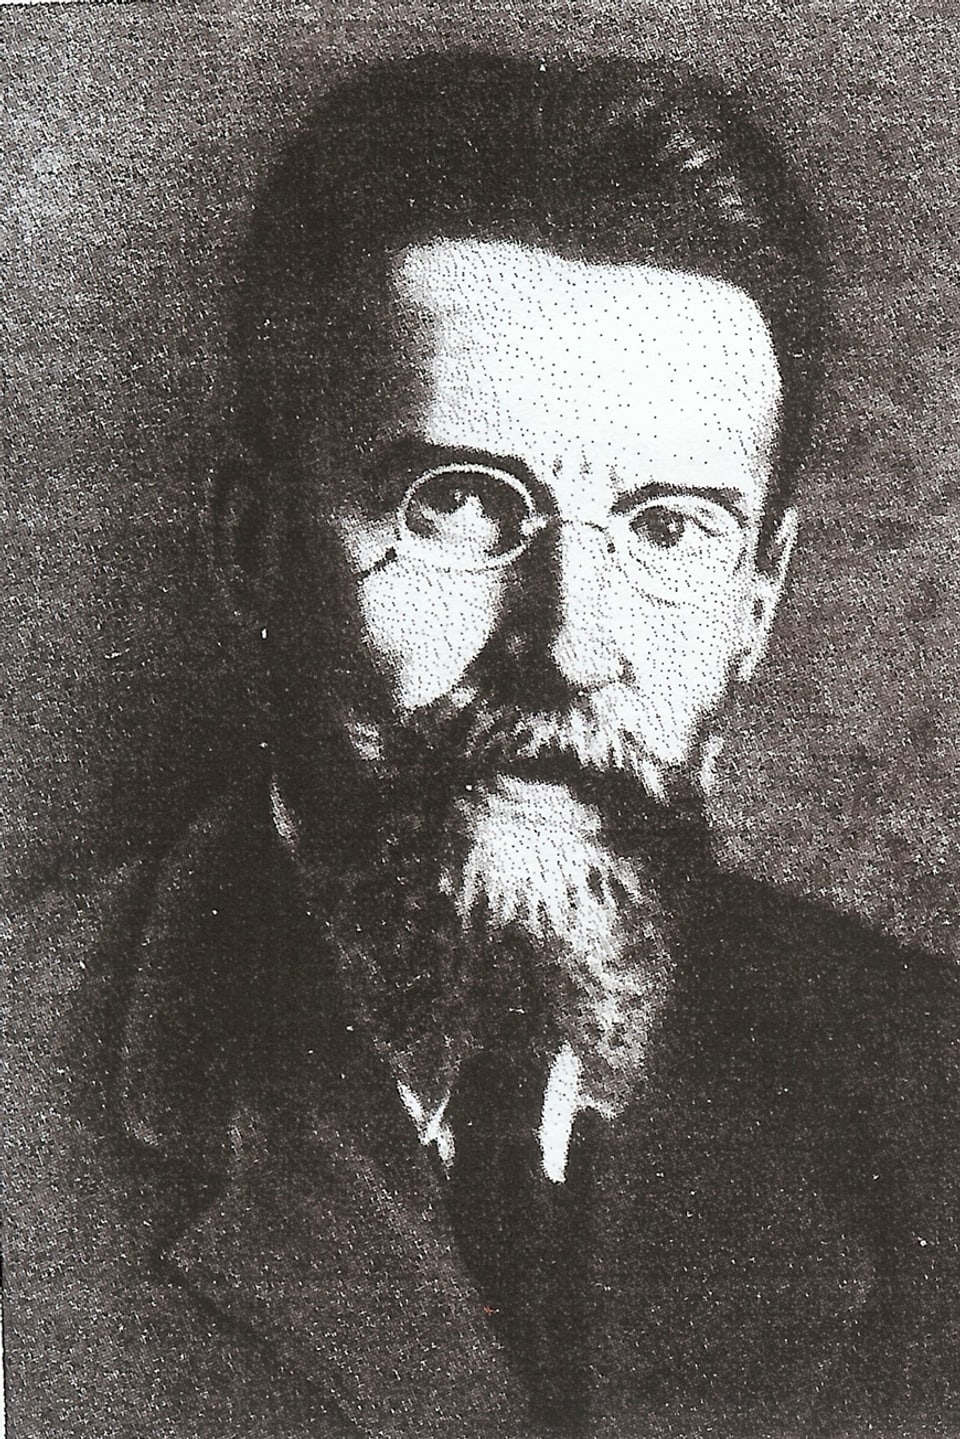 Watzlaw Worowski 